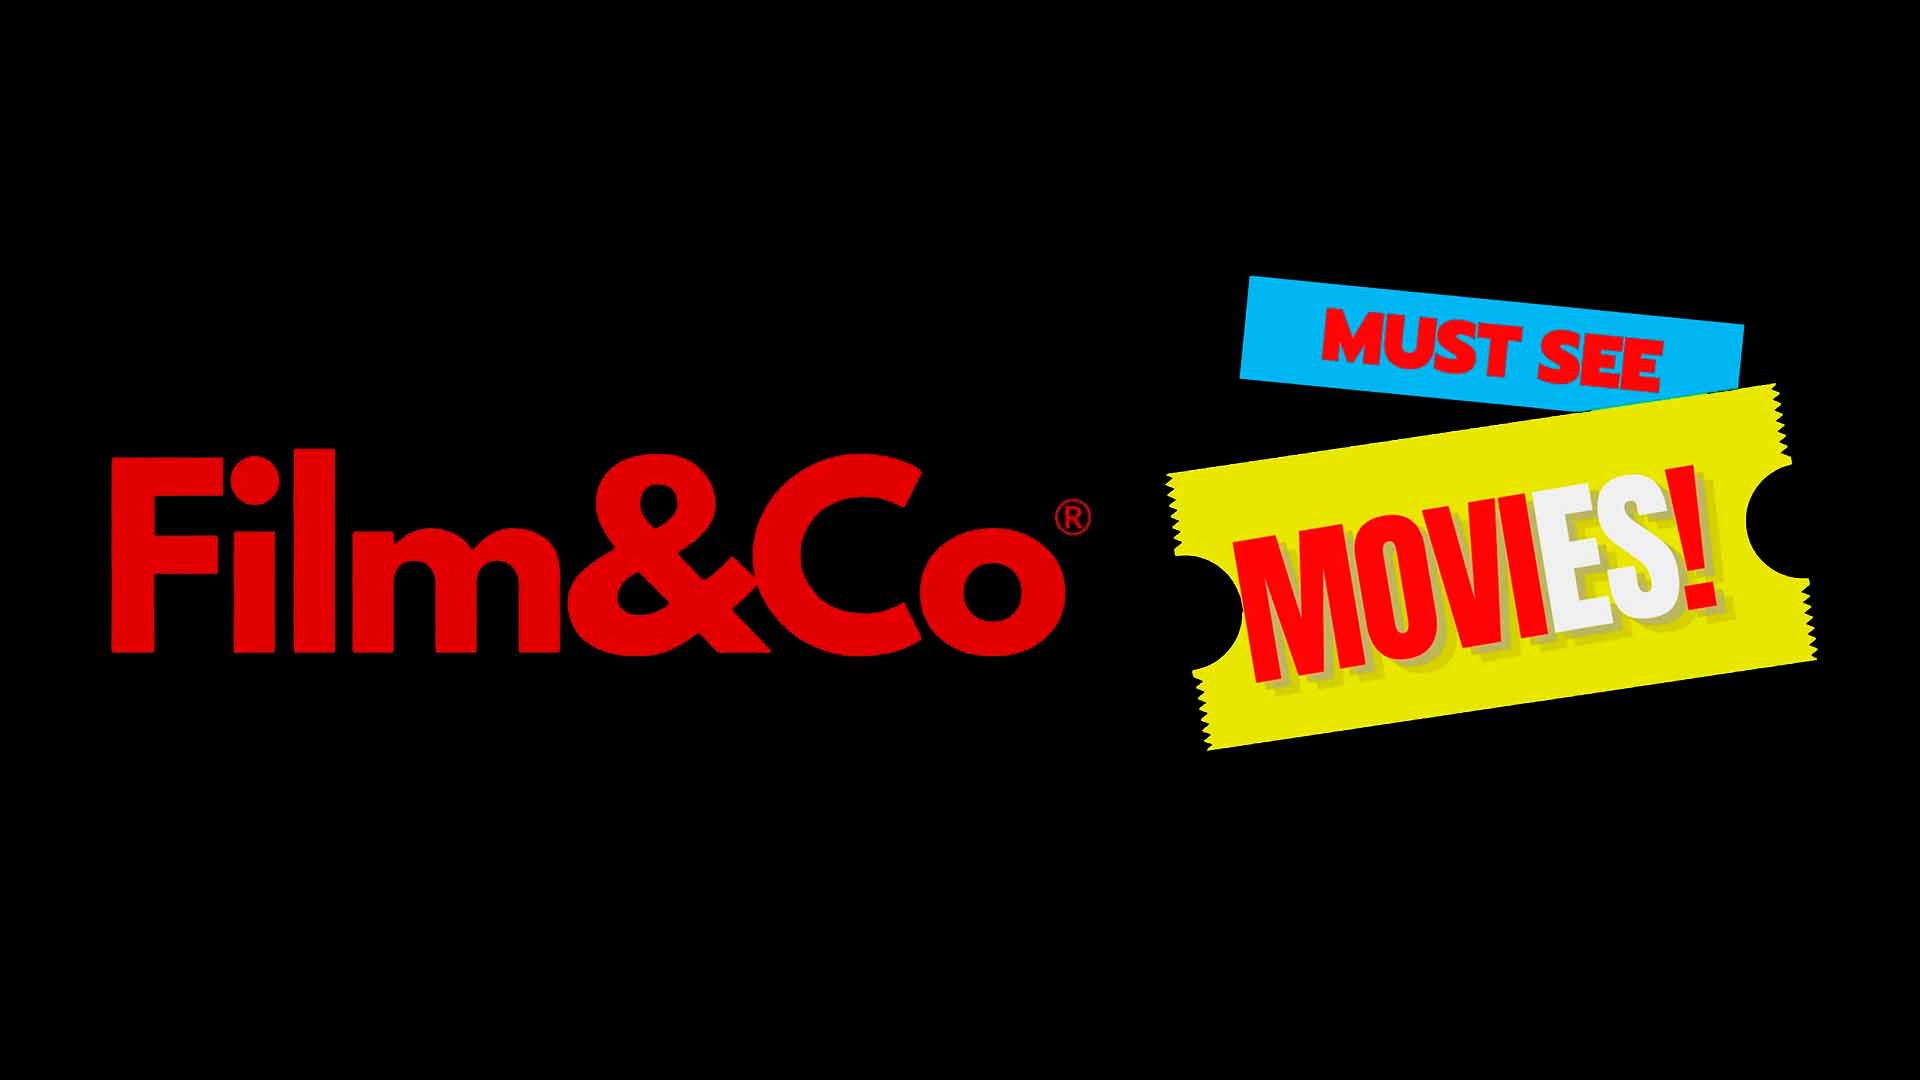 ¿Conocéis Film&Co (F&C) y Must See MoviES!?